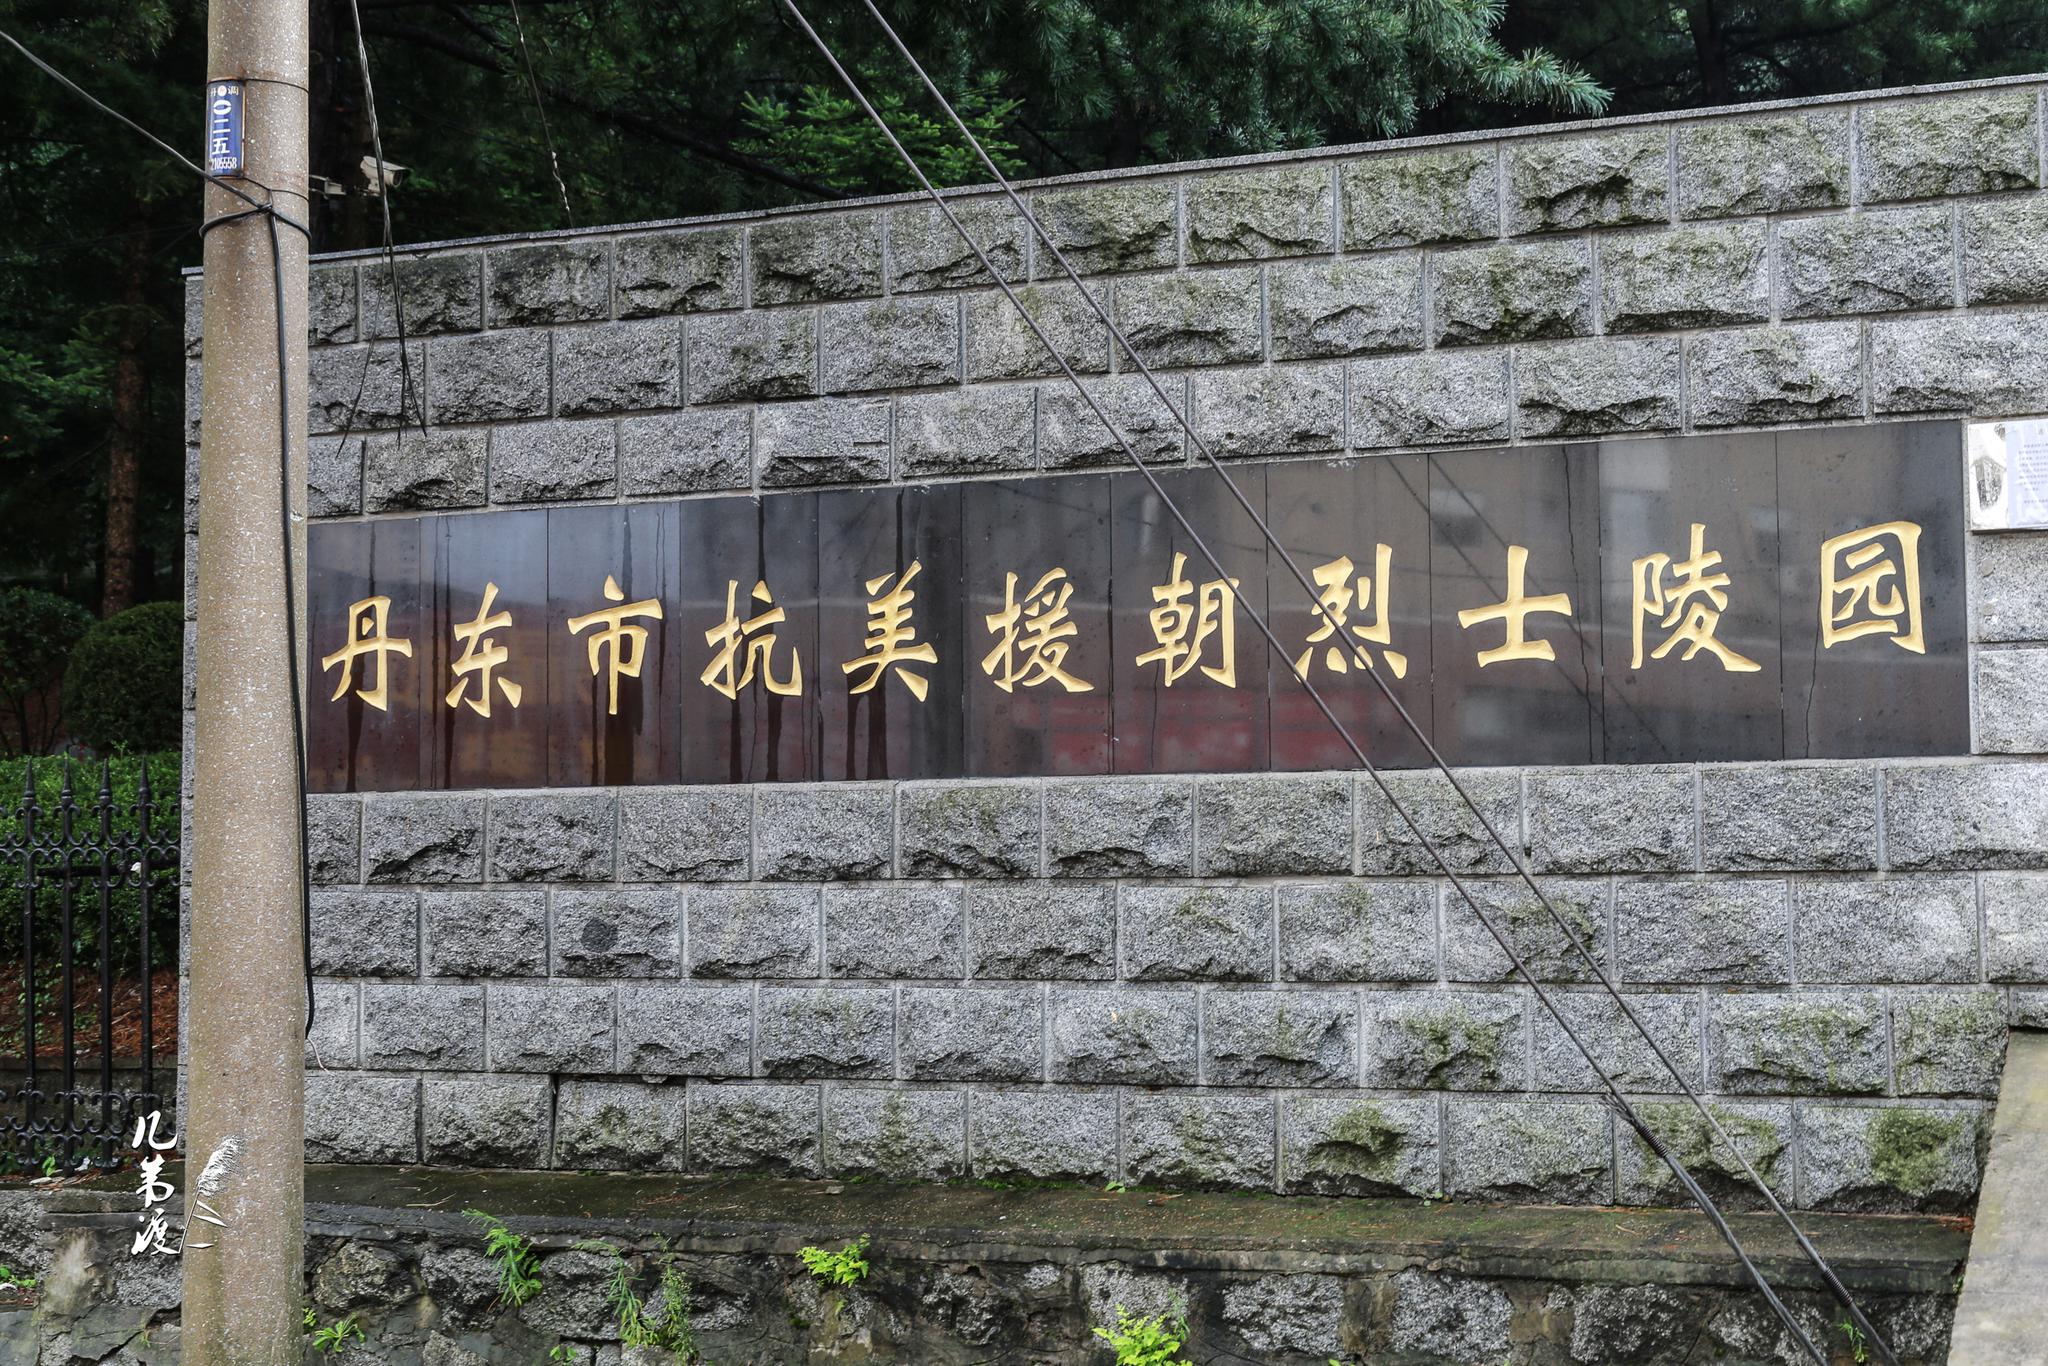 位于锦江山北麓,始建于1951年5月1日